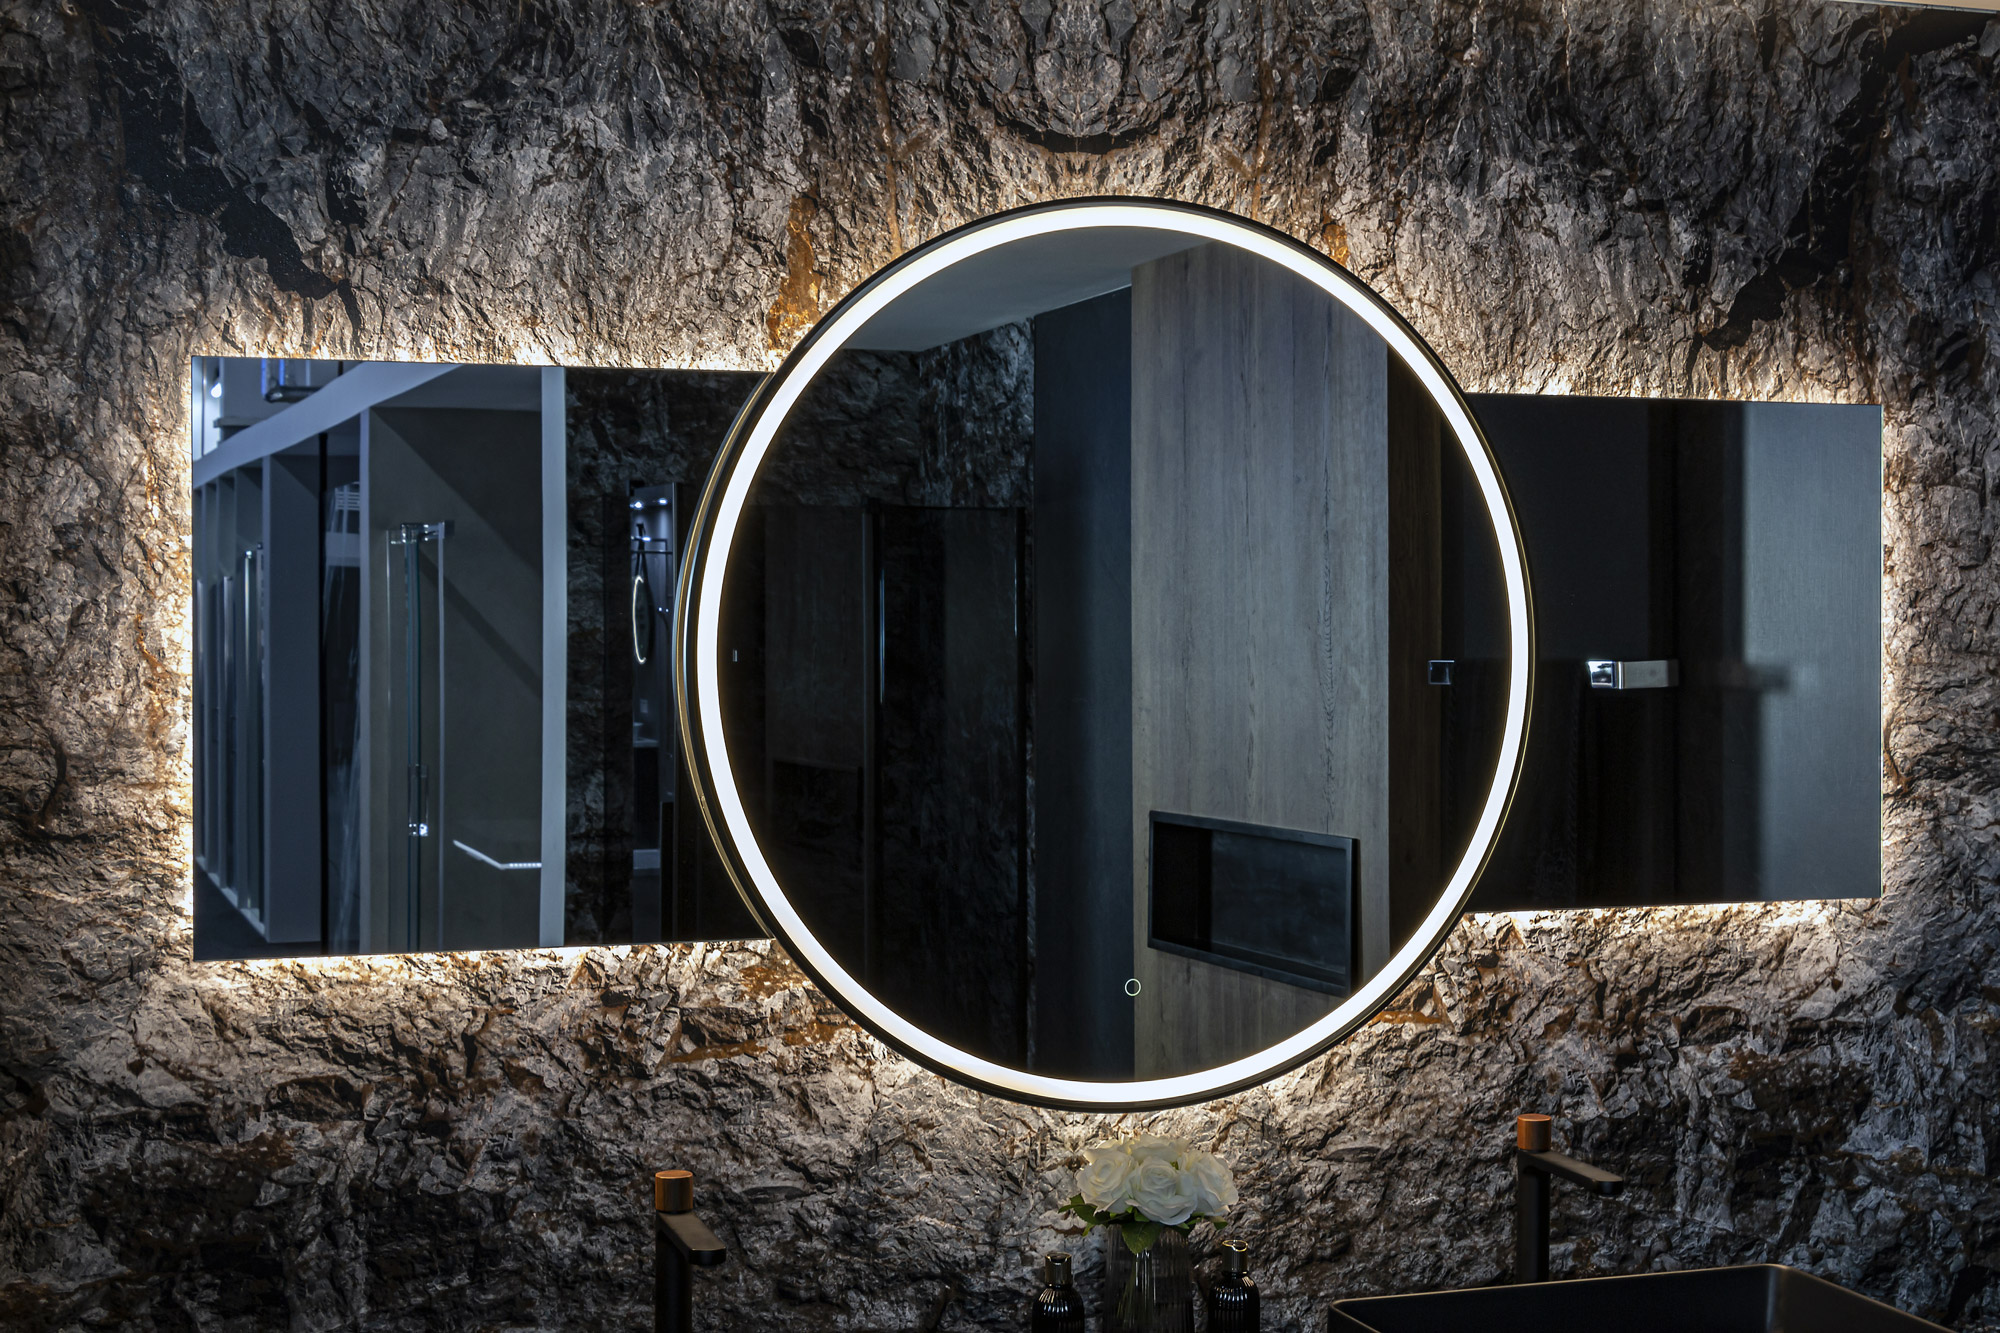 Ein exklusiver Spiegel mit einer Größe von 200 cm, runder Mitte von 100 cm, warmen und kalten Lichtern sowie einer praktischen Dimmfunktion. Perfektes Badezimmerambiente auf höchstem Niveau